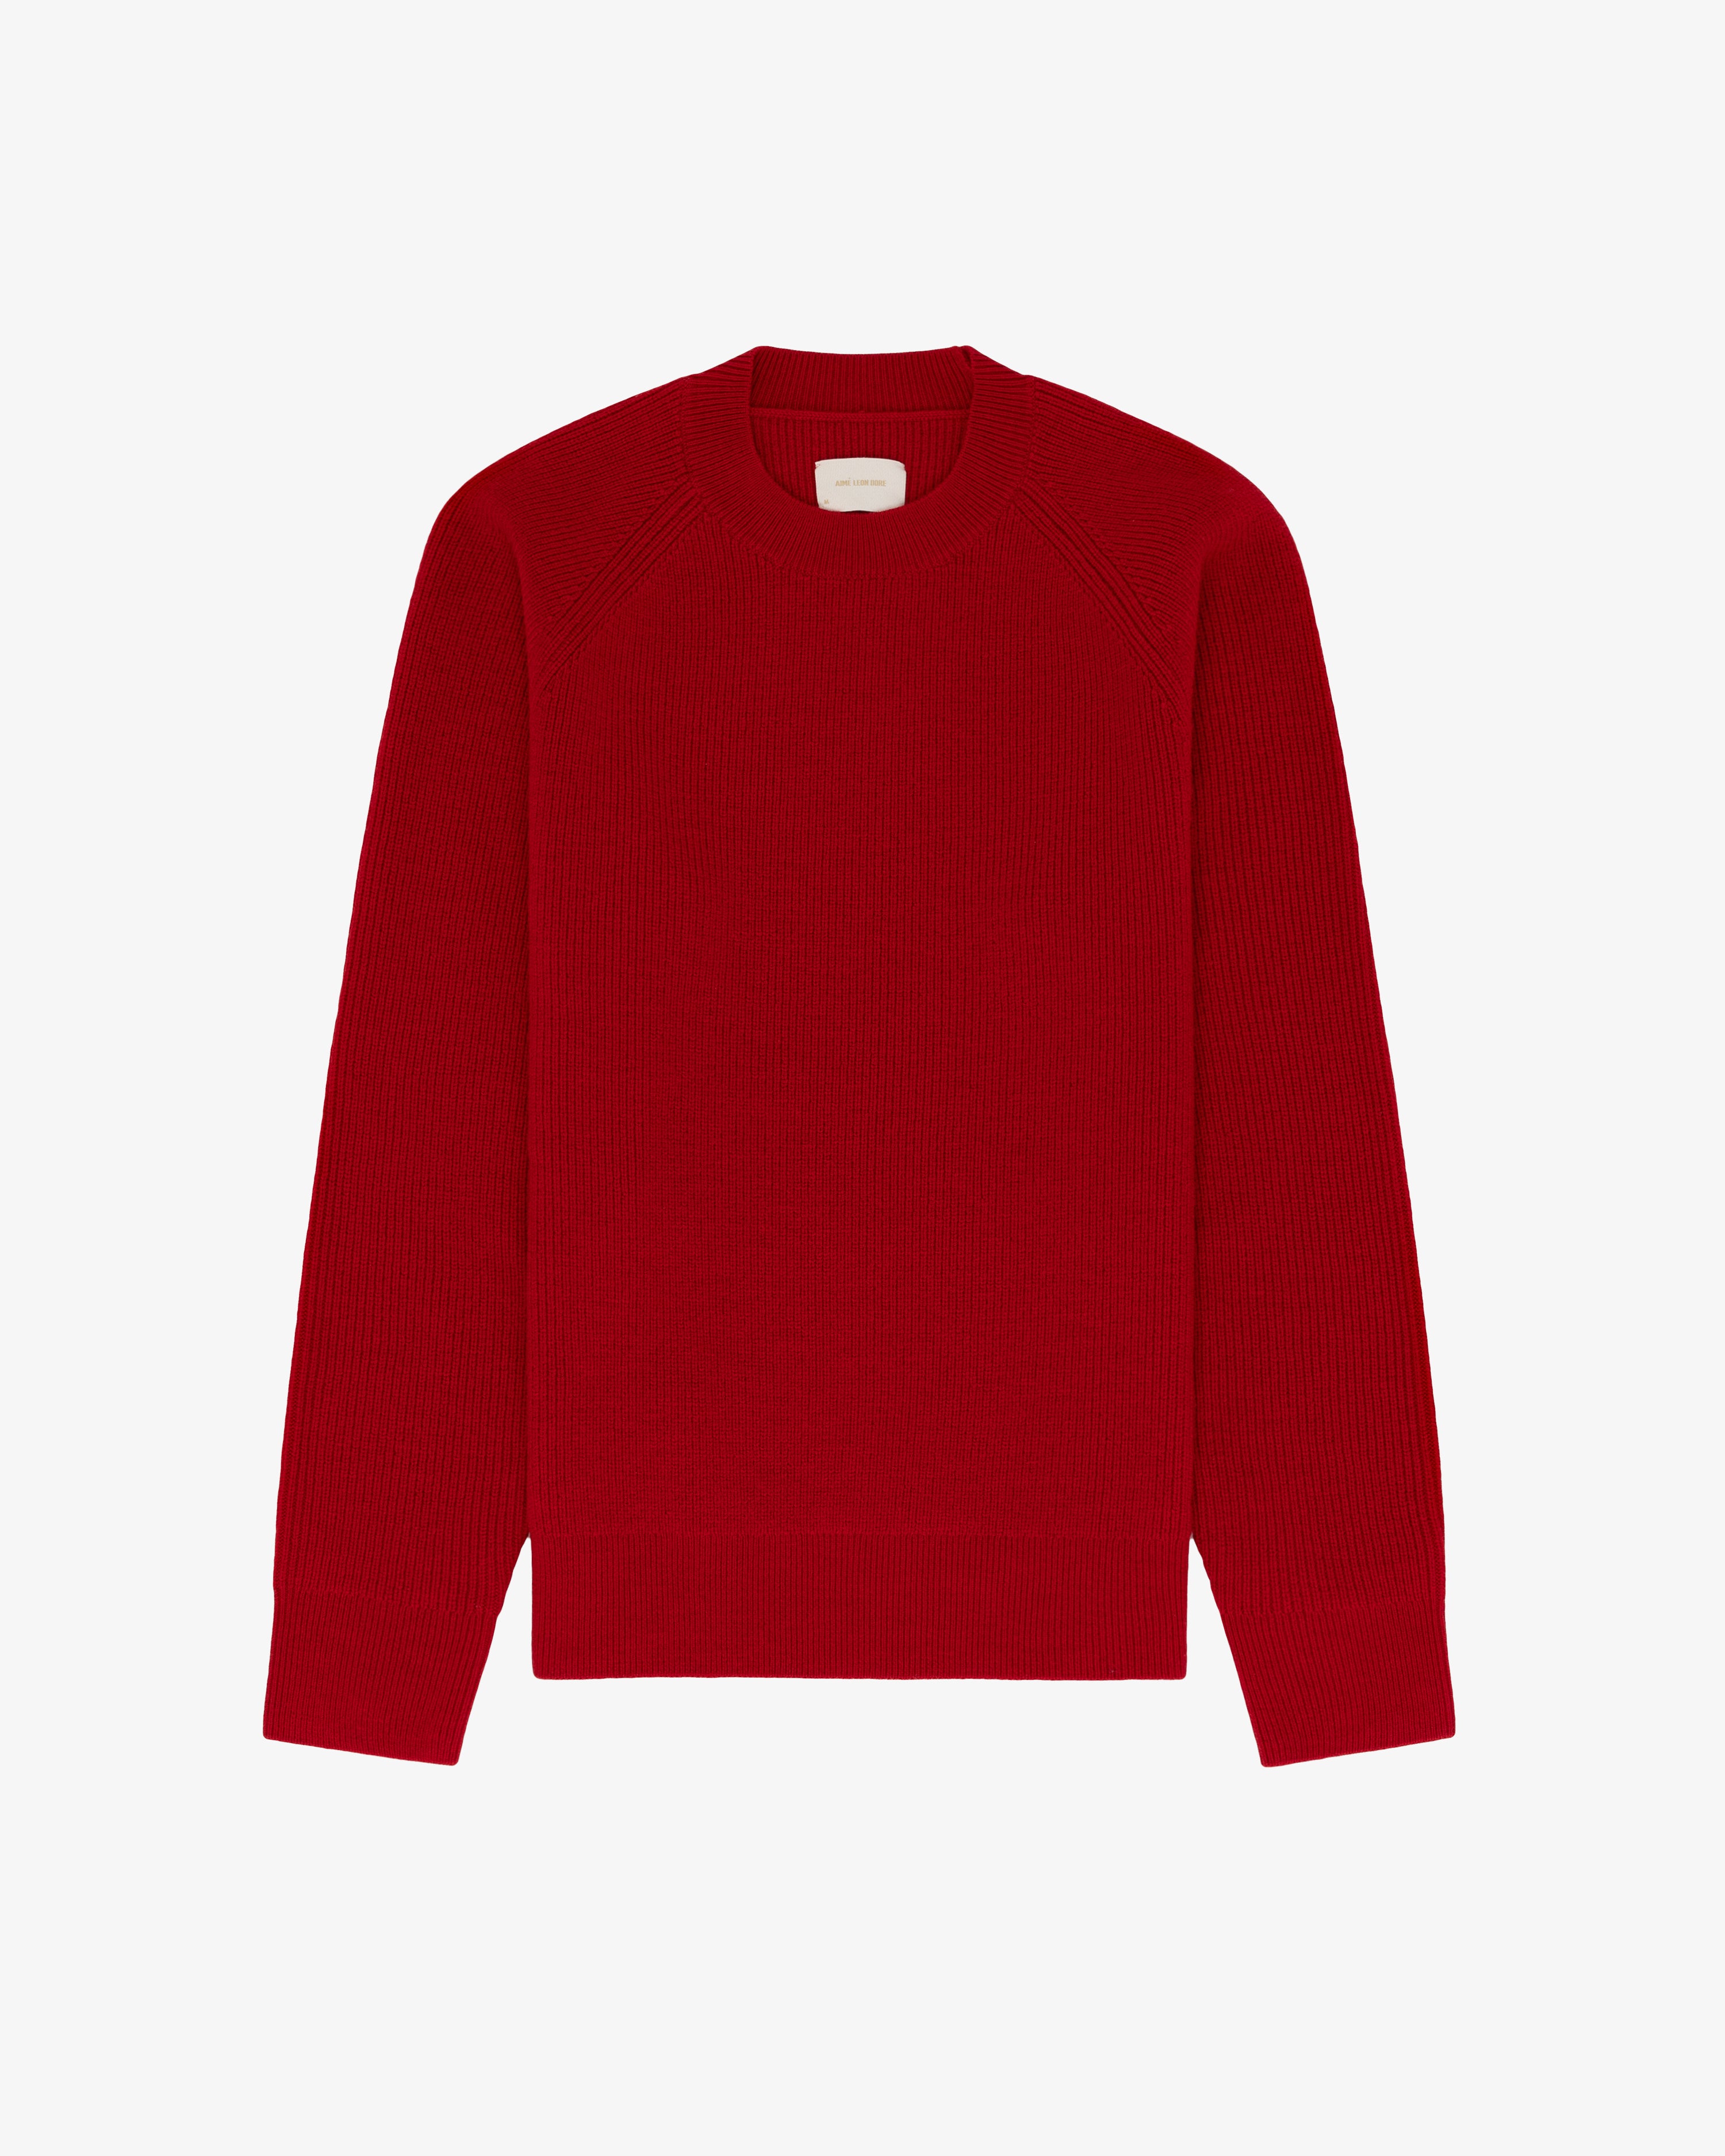 Merino Shaker Stitch Crewneck Sweater